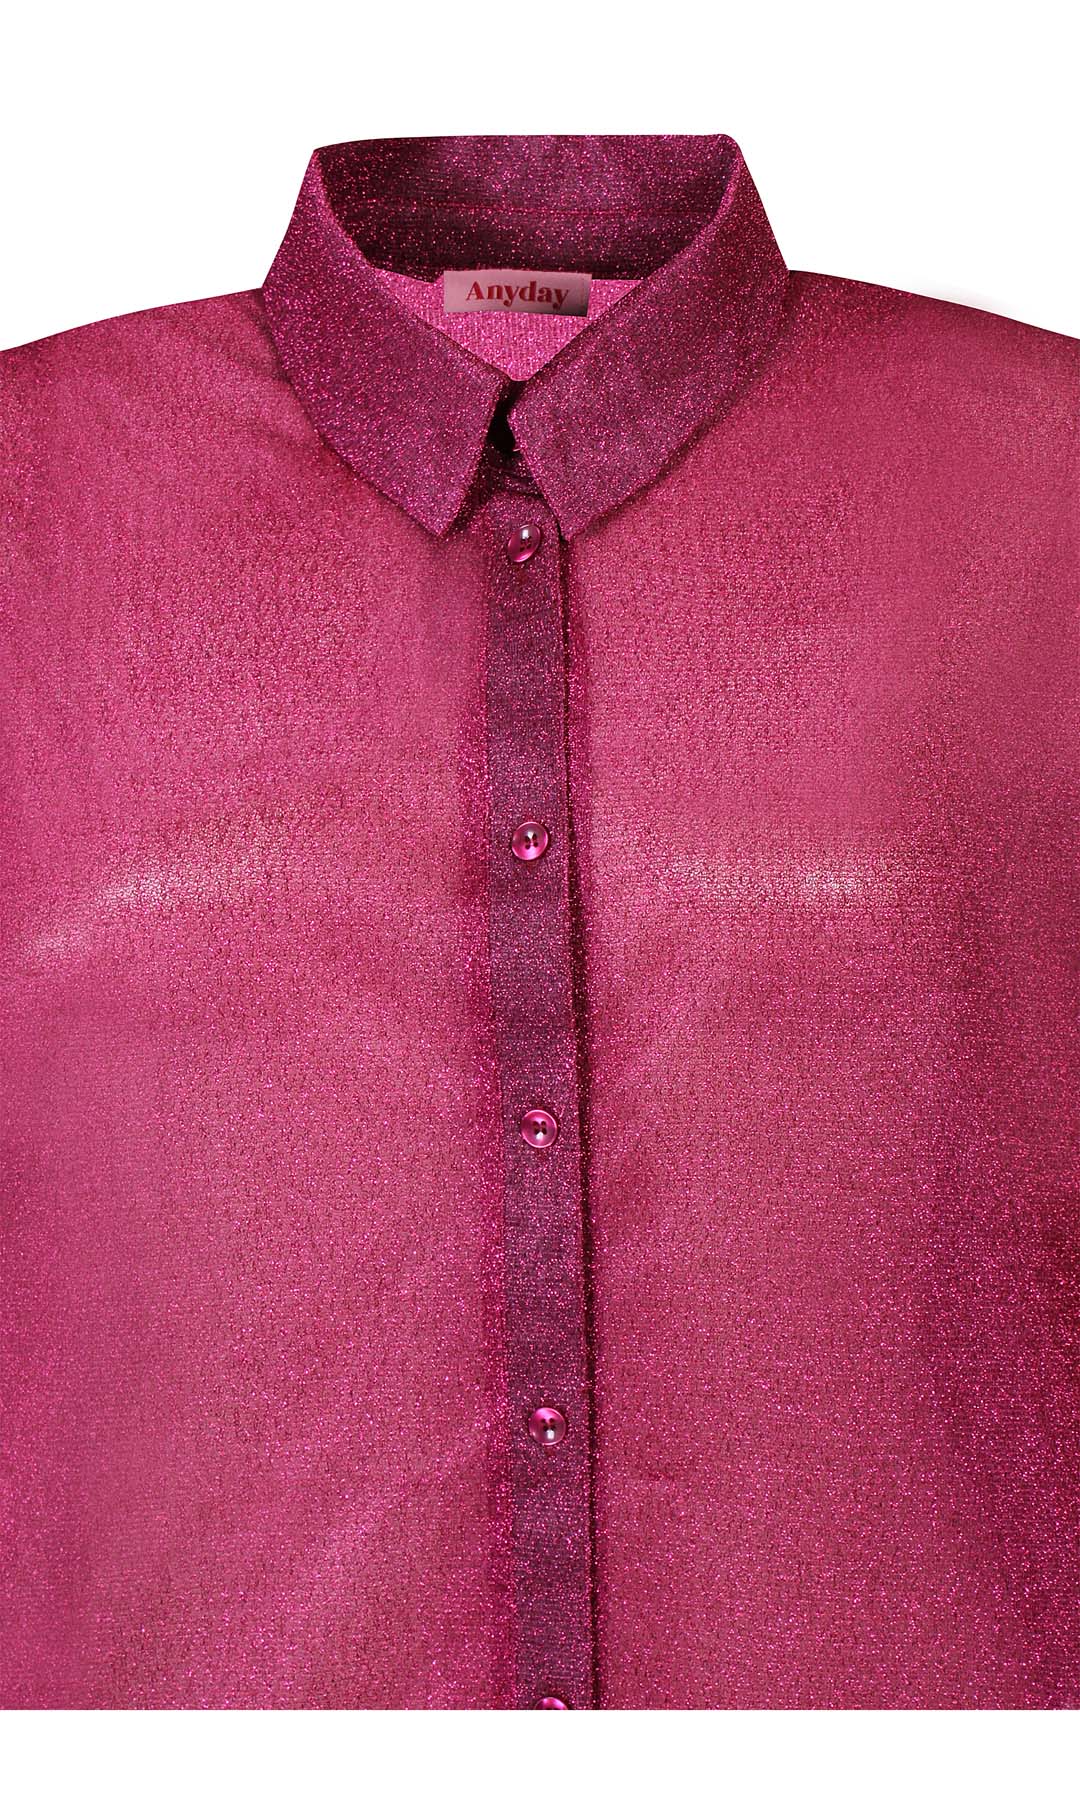 Liv 071 - Skjorte - Pink